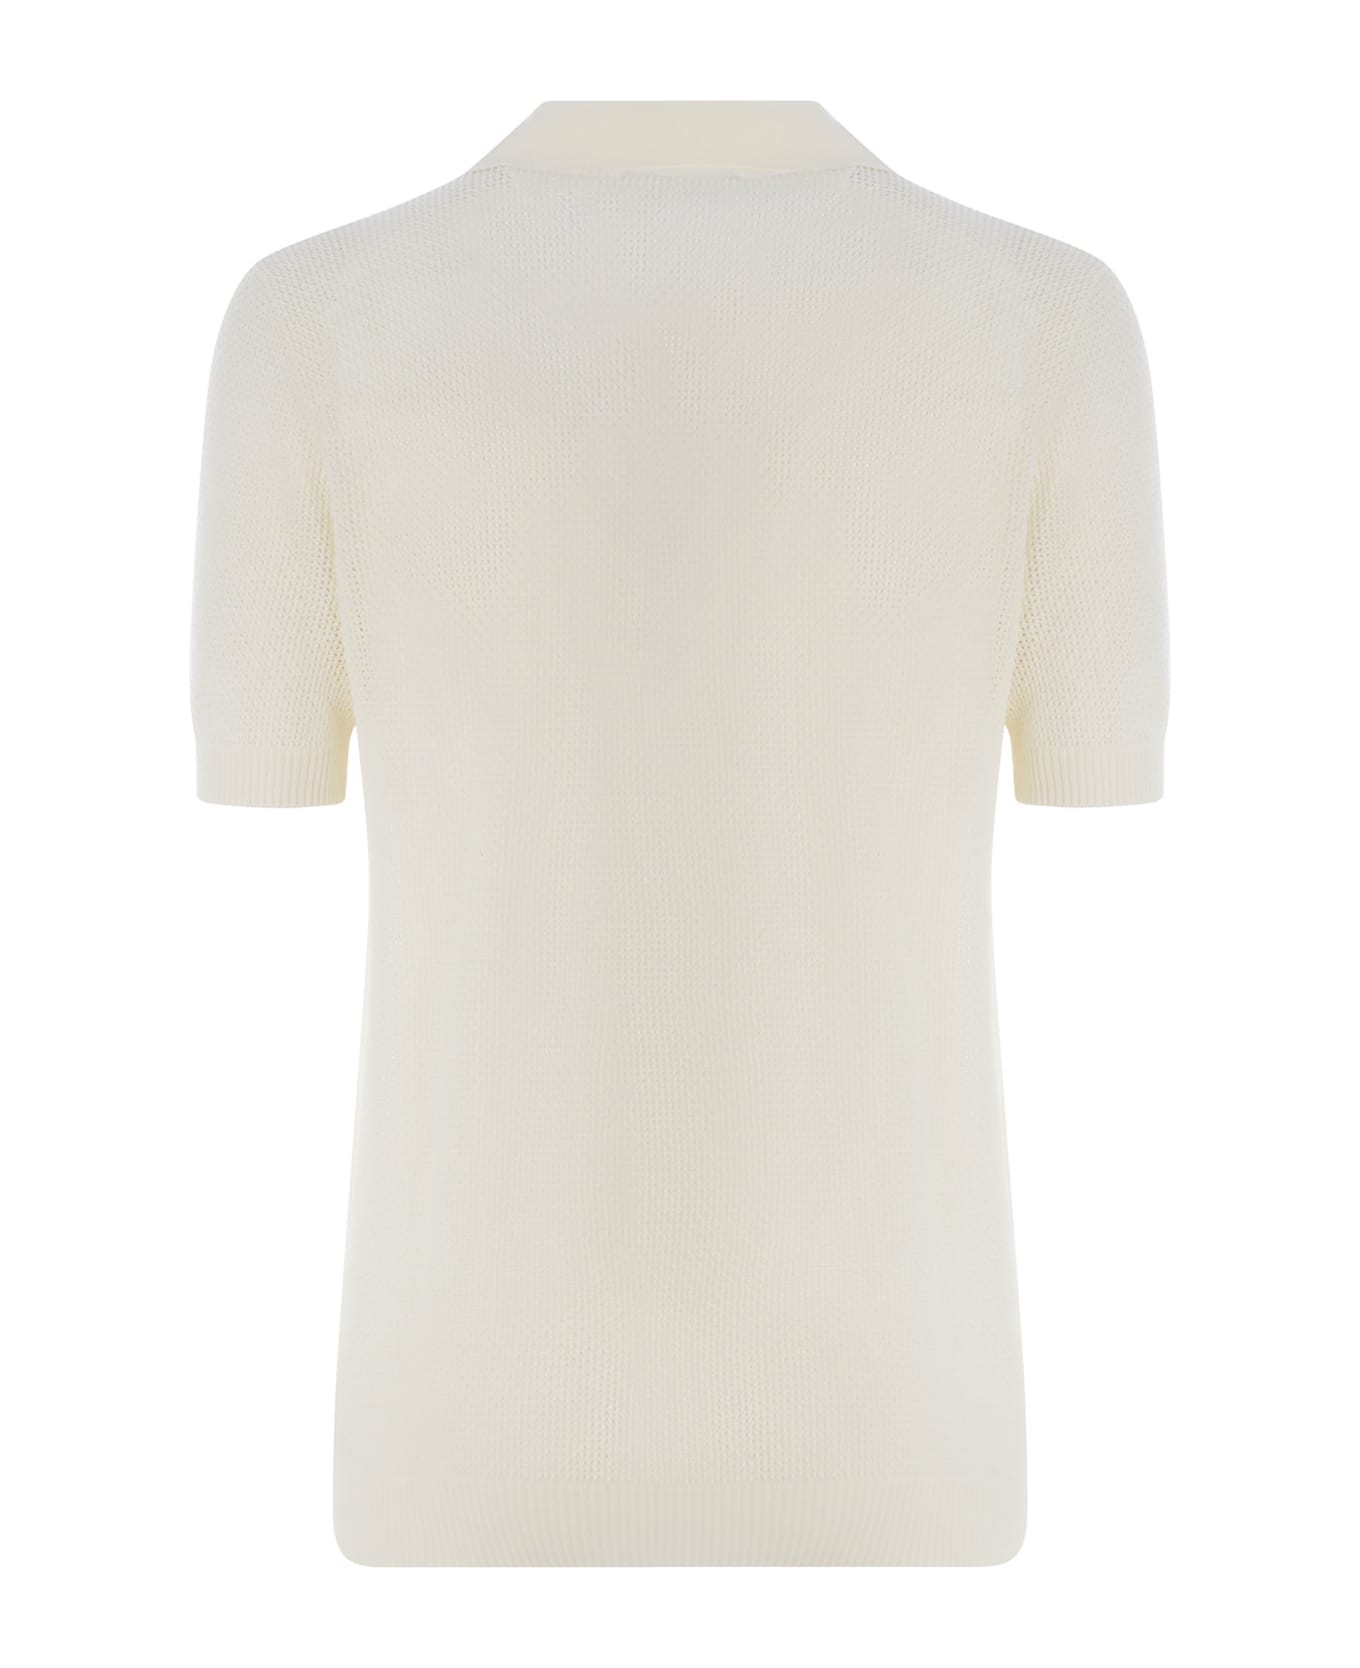 Tagliatore Polo Shirt Tagliatore Made Of Cotton Thread - Off white